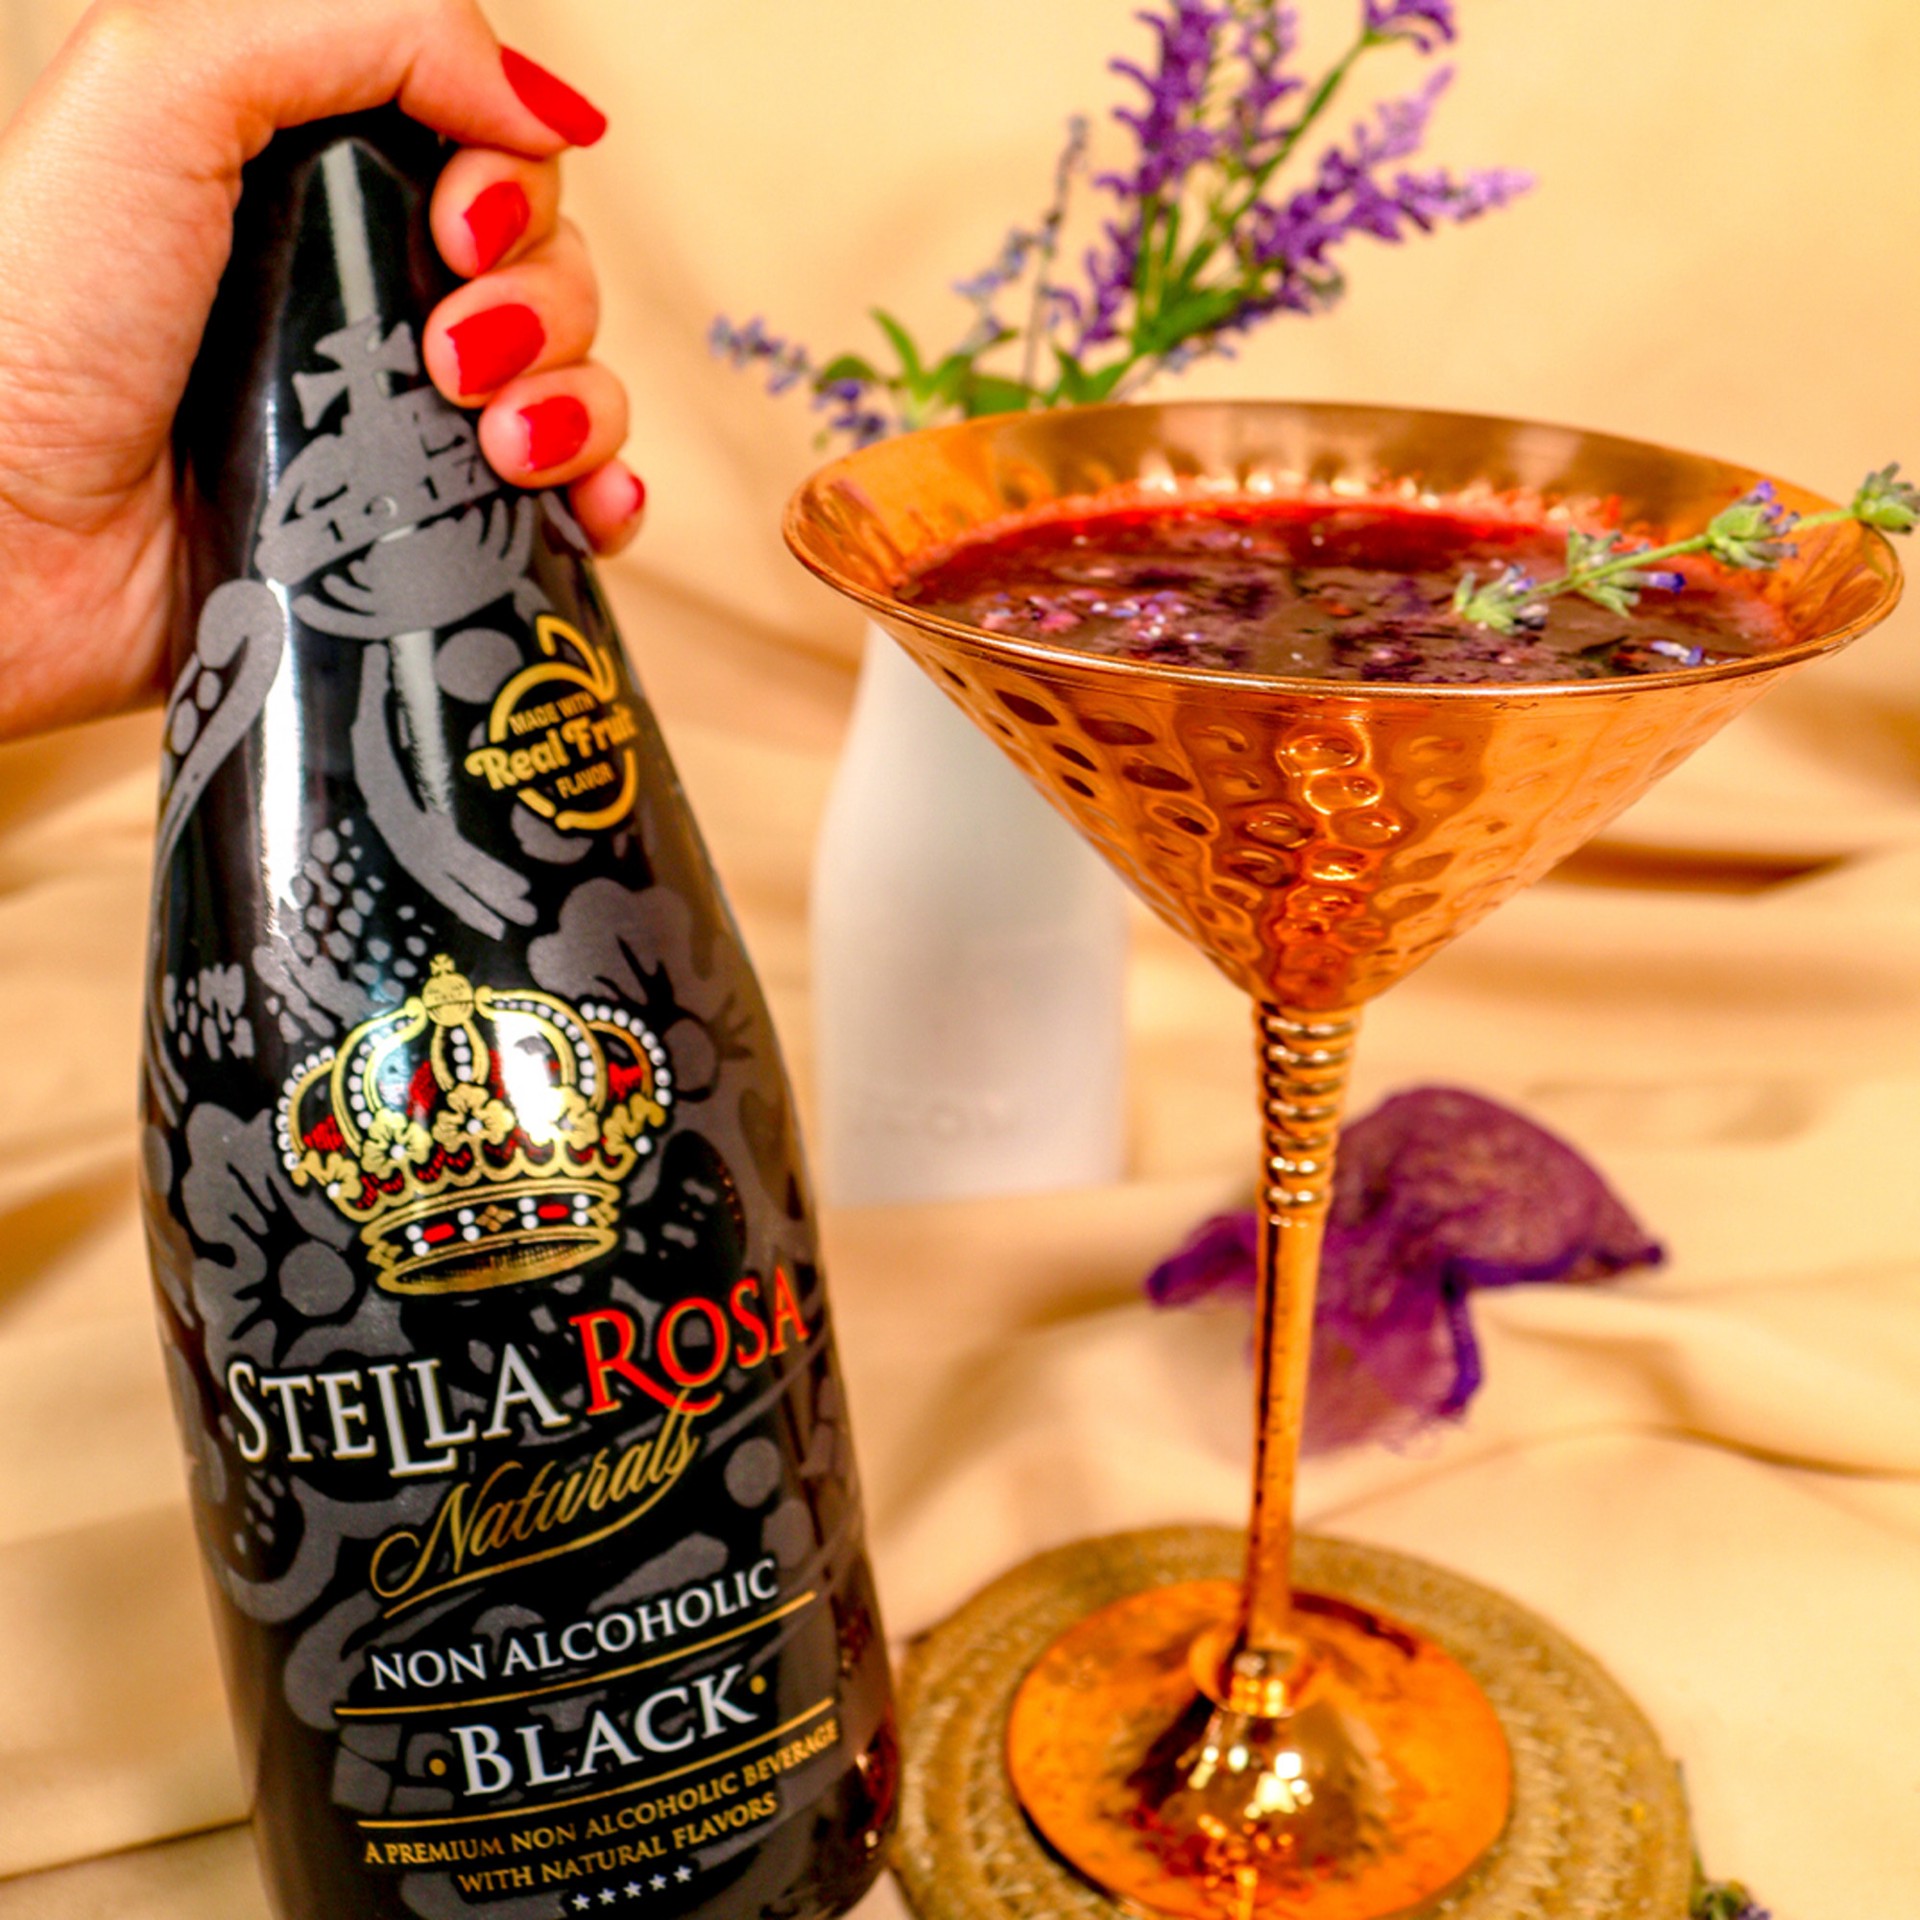 slide 5 of 9, Stella Rosa Naturals Black Naturals Non-Alcoholic Beverage 750mL, 750 ml